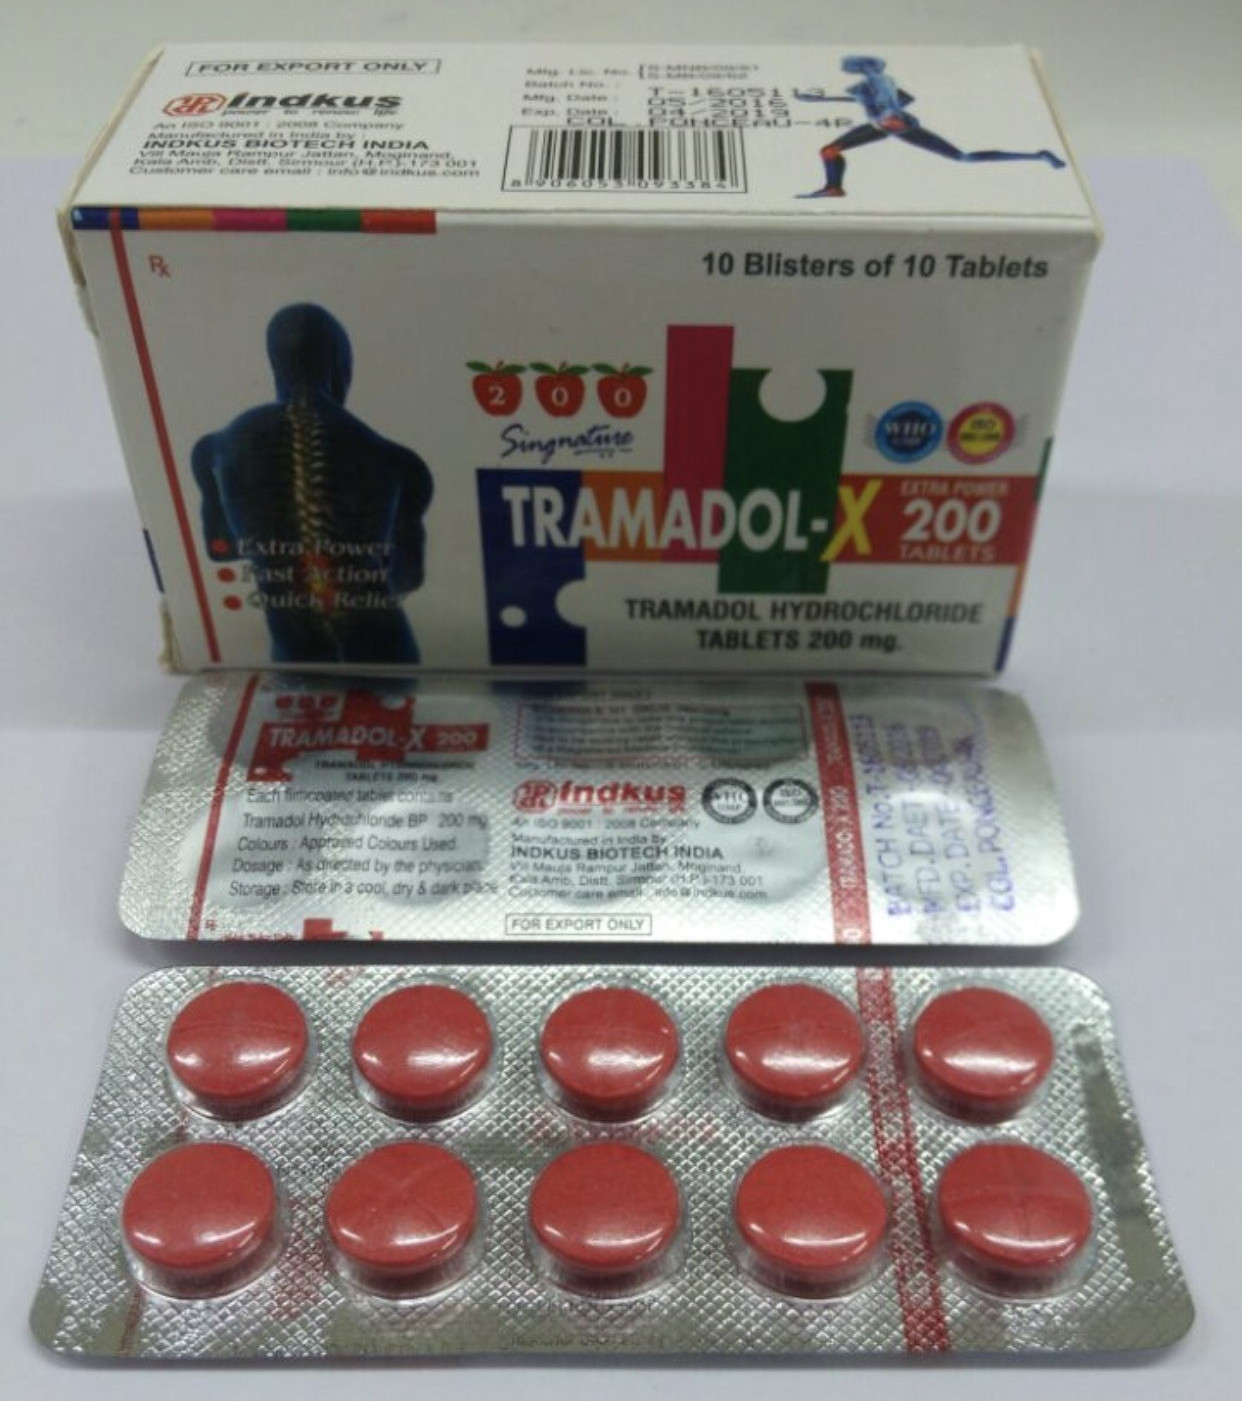 Tramadol Hydrochloride Tablets 200mg